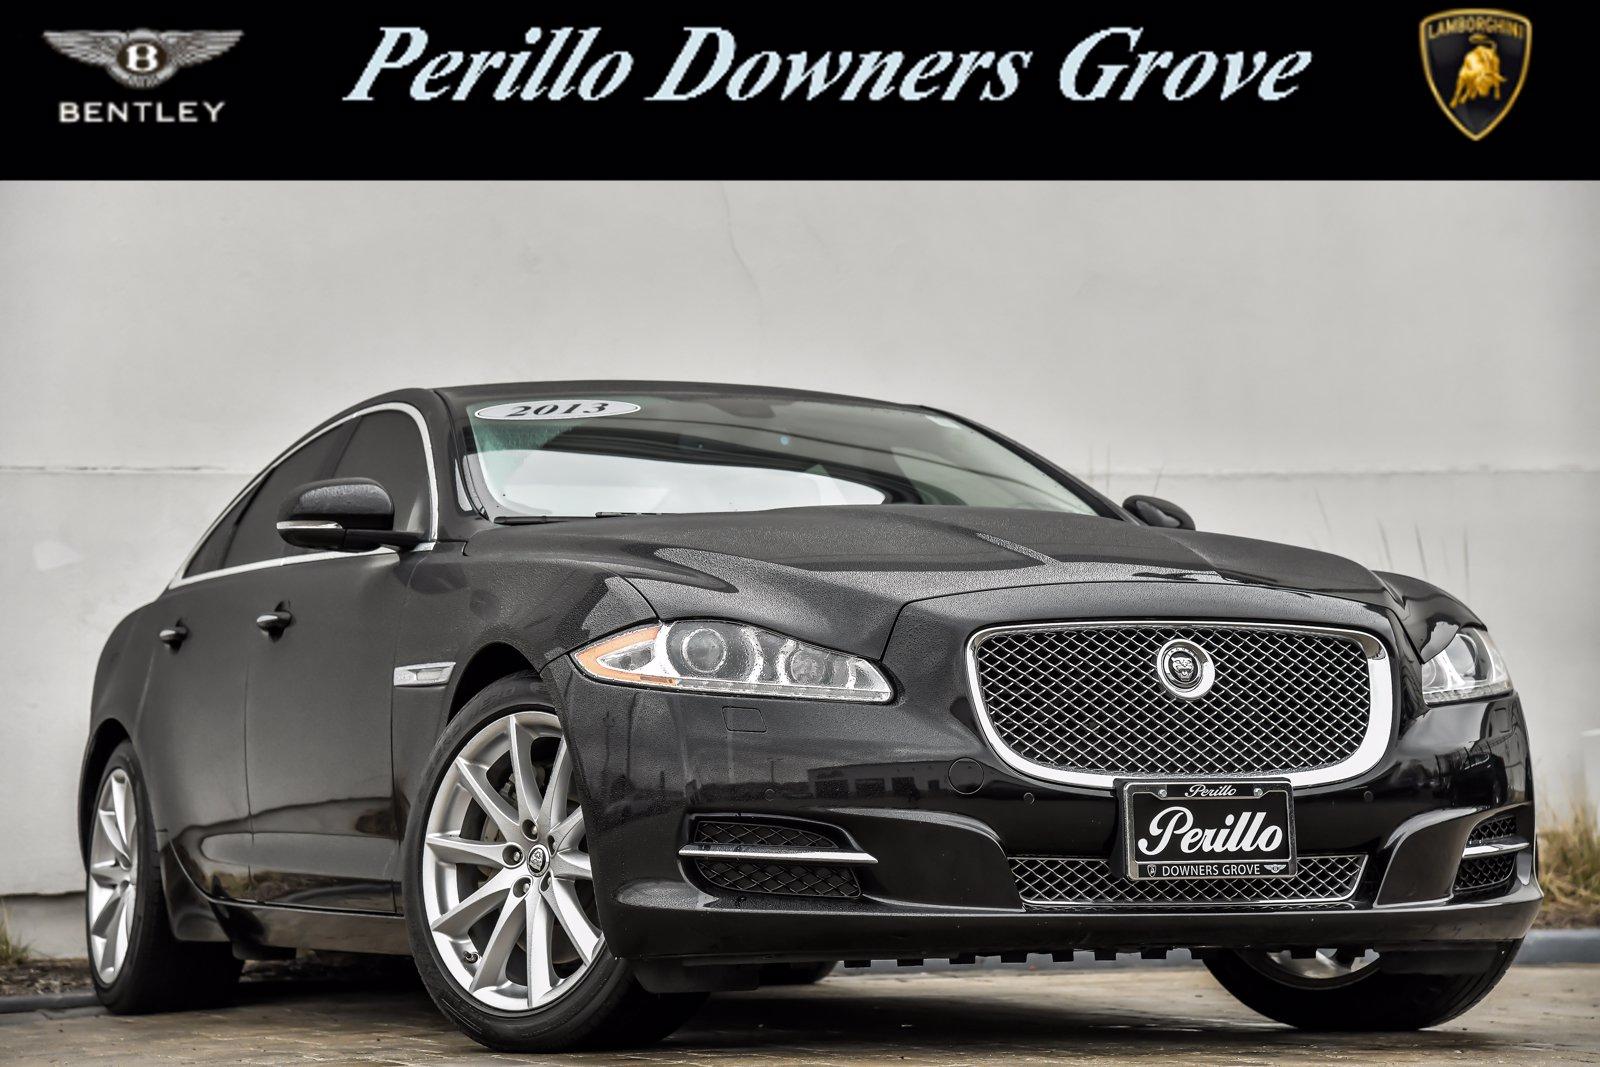 Used 2013 Jaguar XJ  | Downers Grove, IL